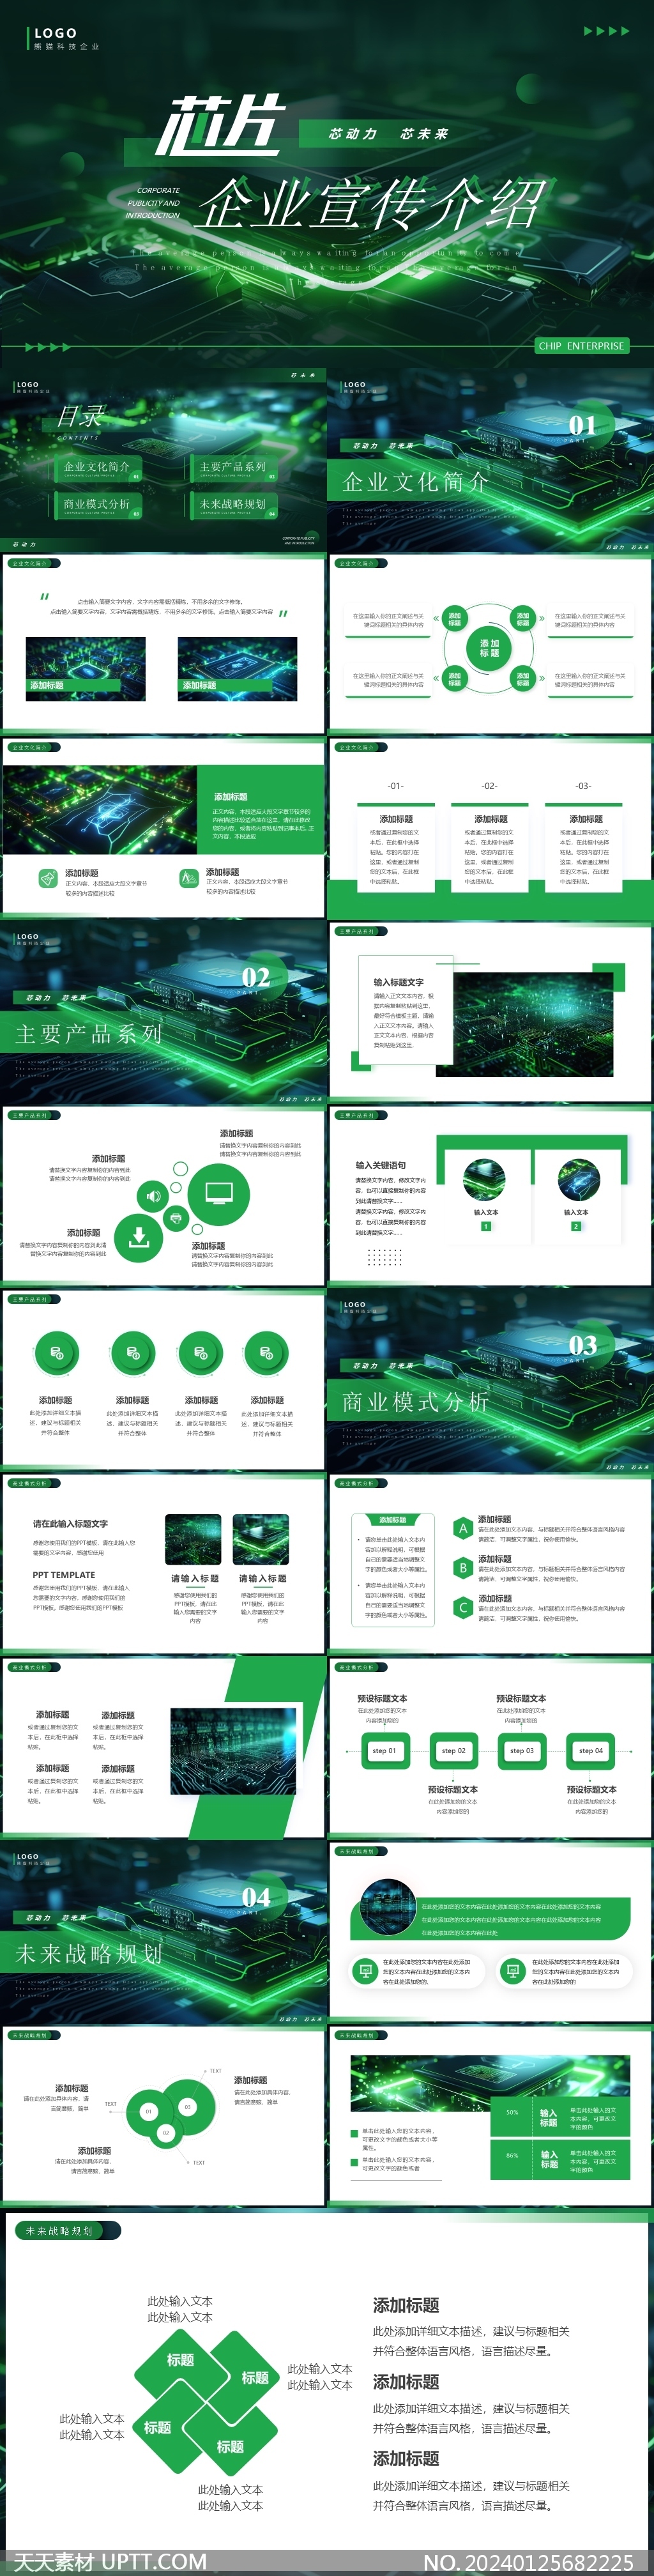 绿色芯片企业宣传介绍PPT模板